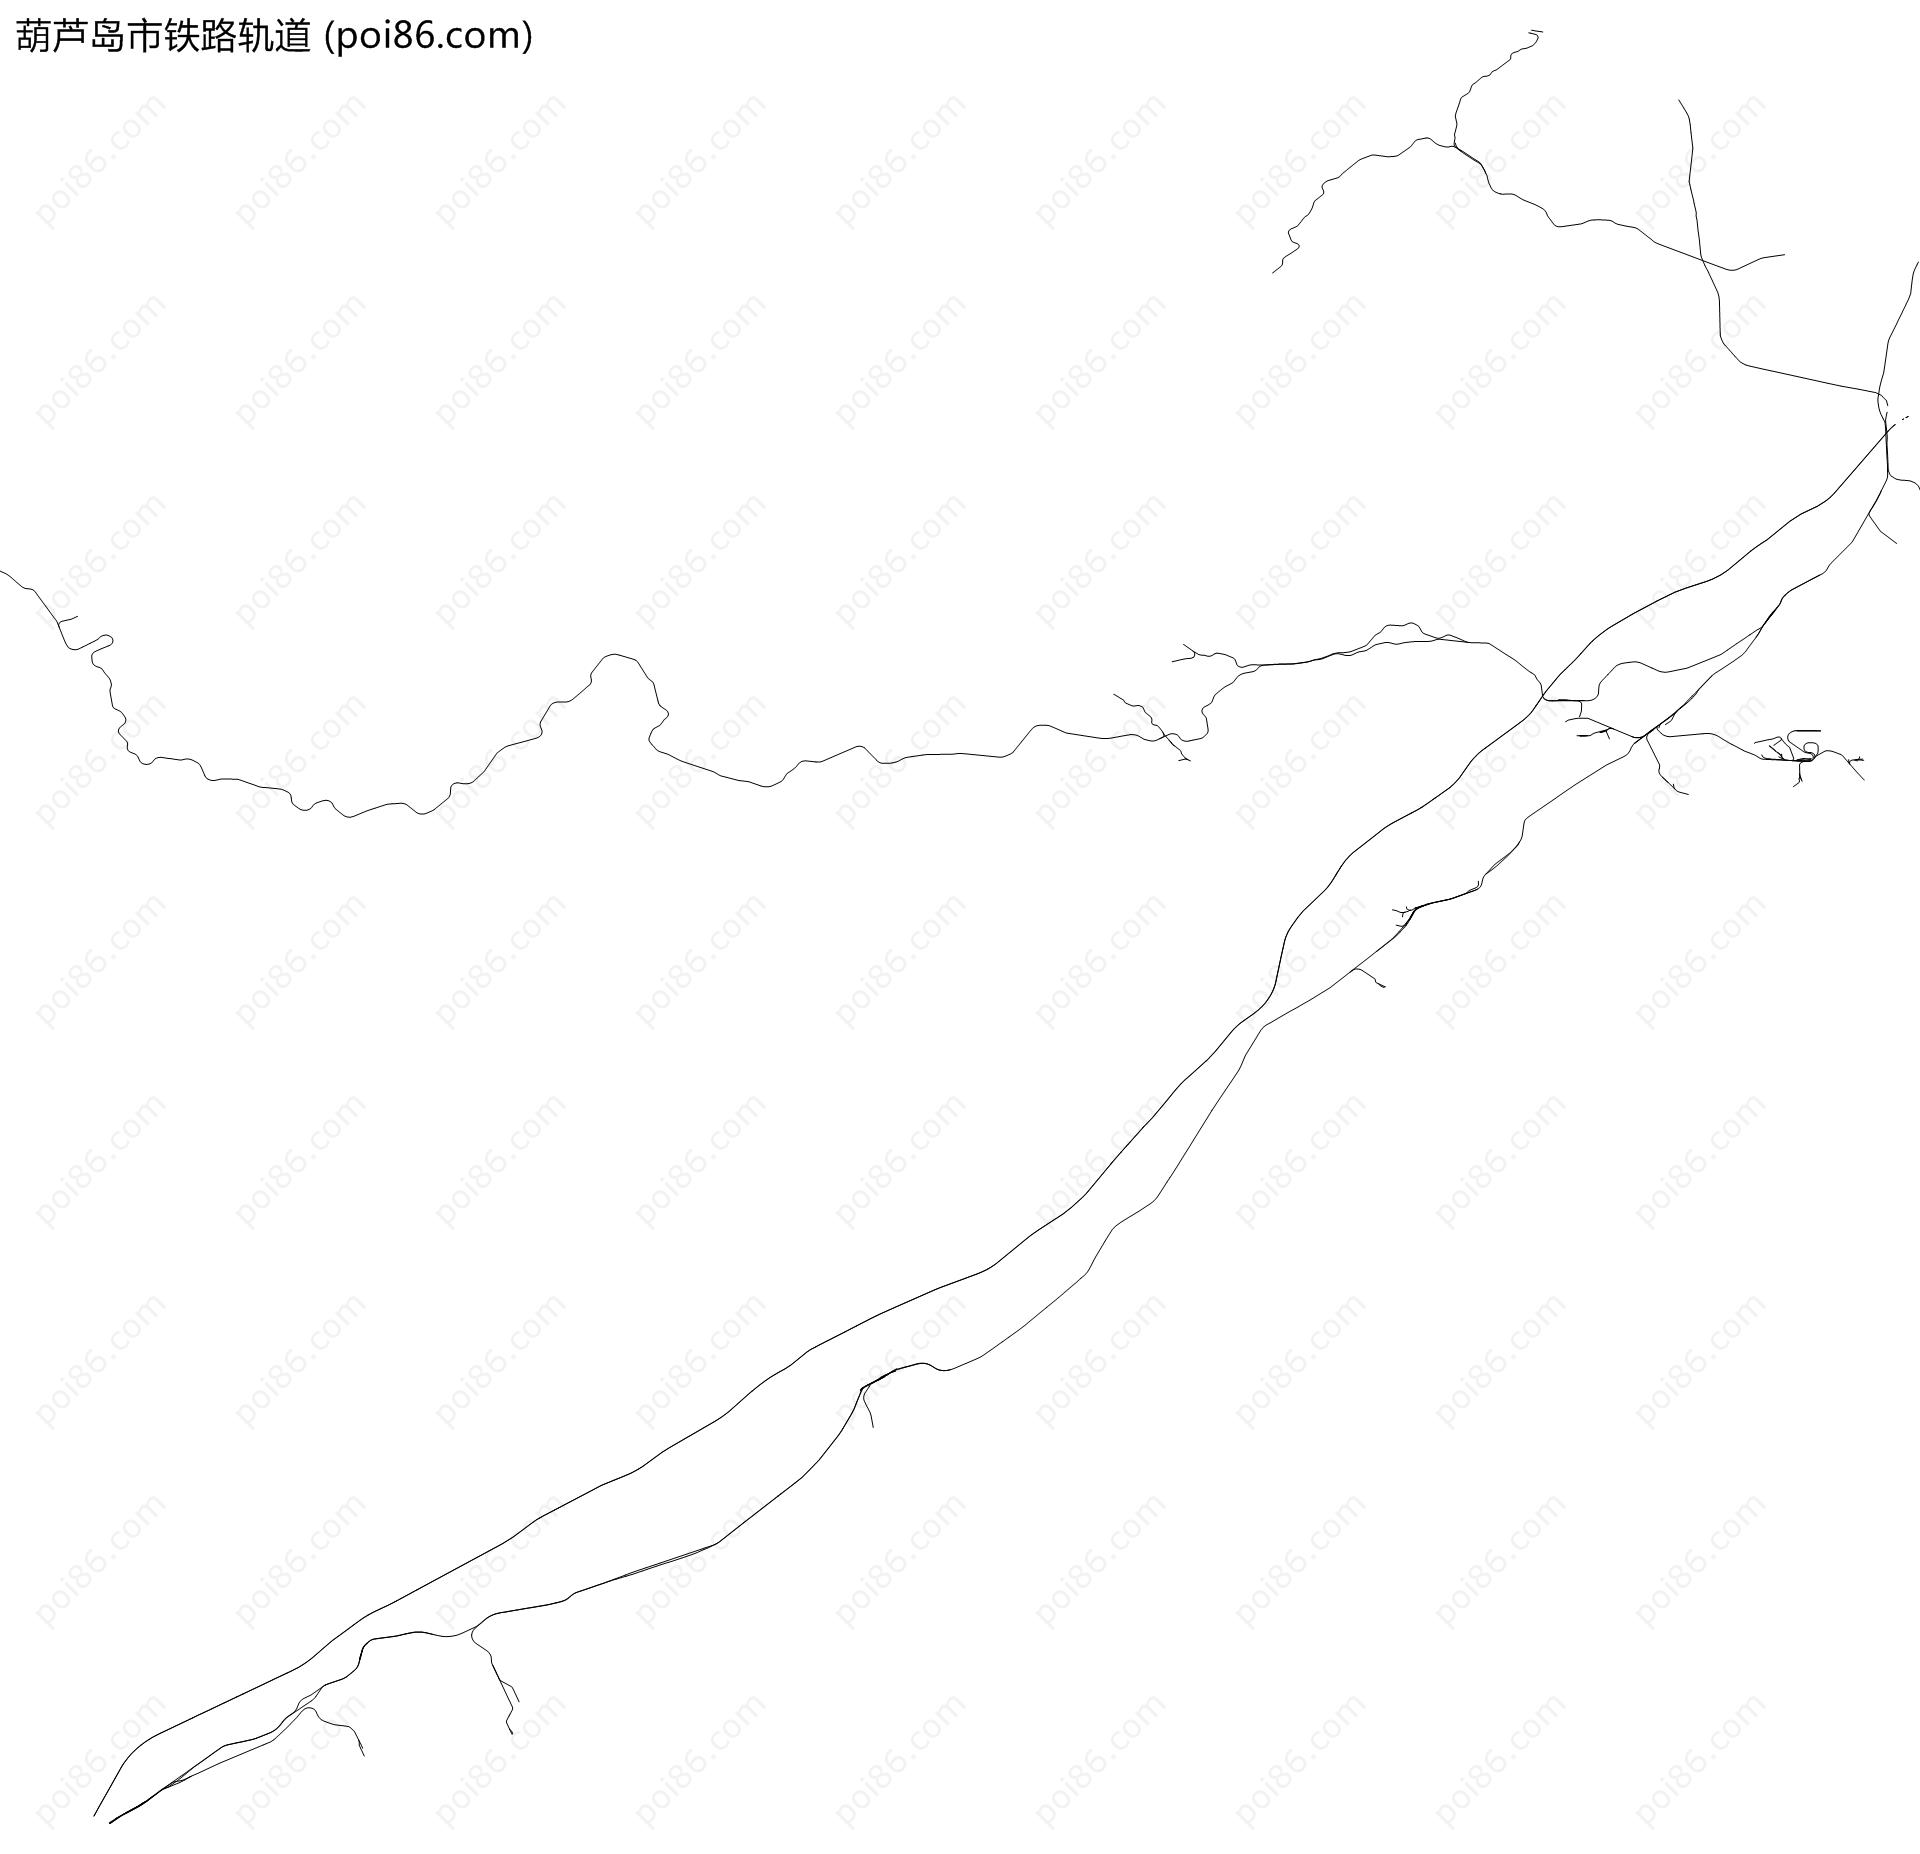 葫芦岛市铁路轨道地图